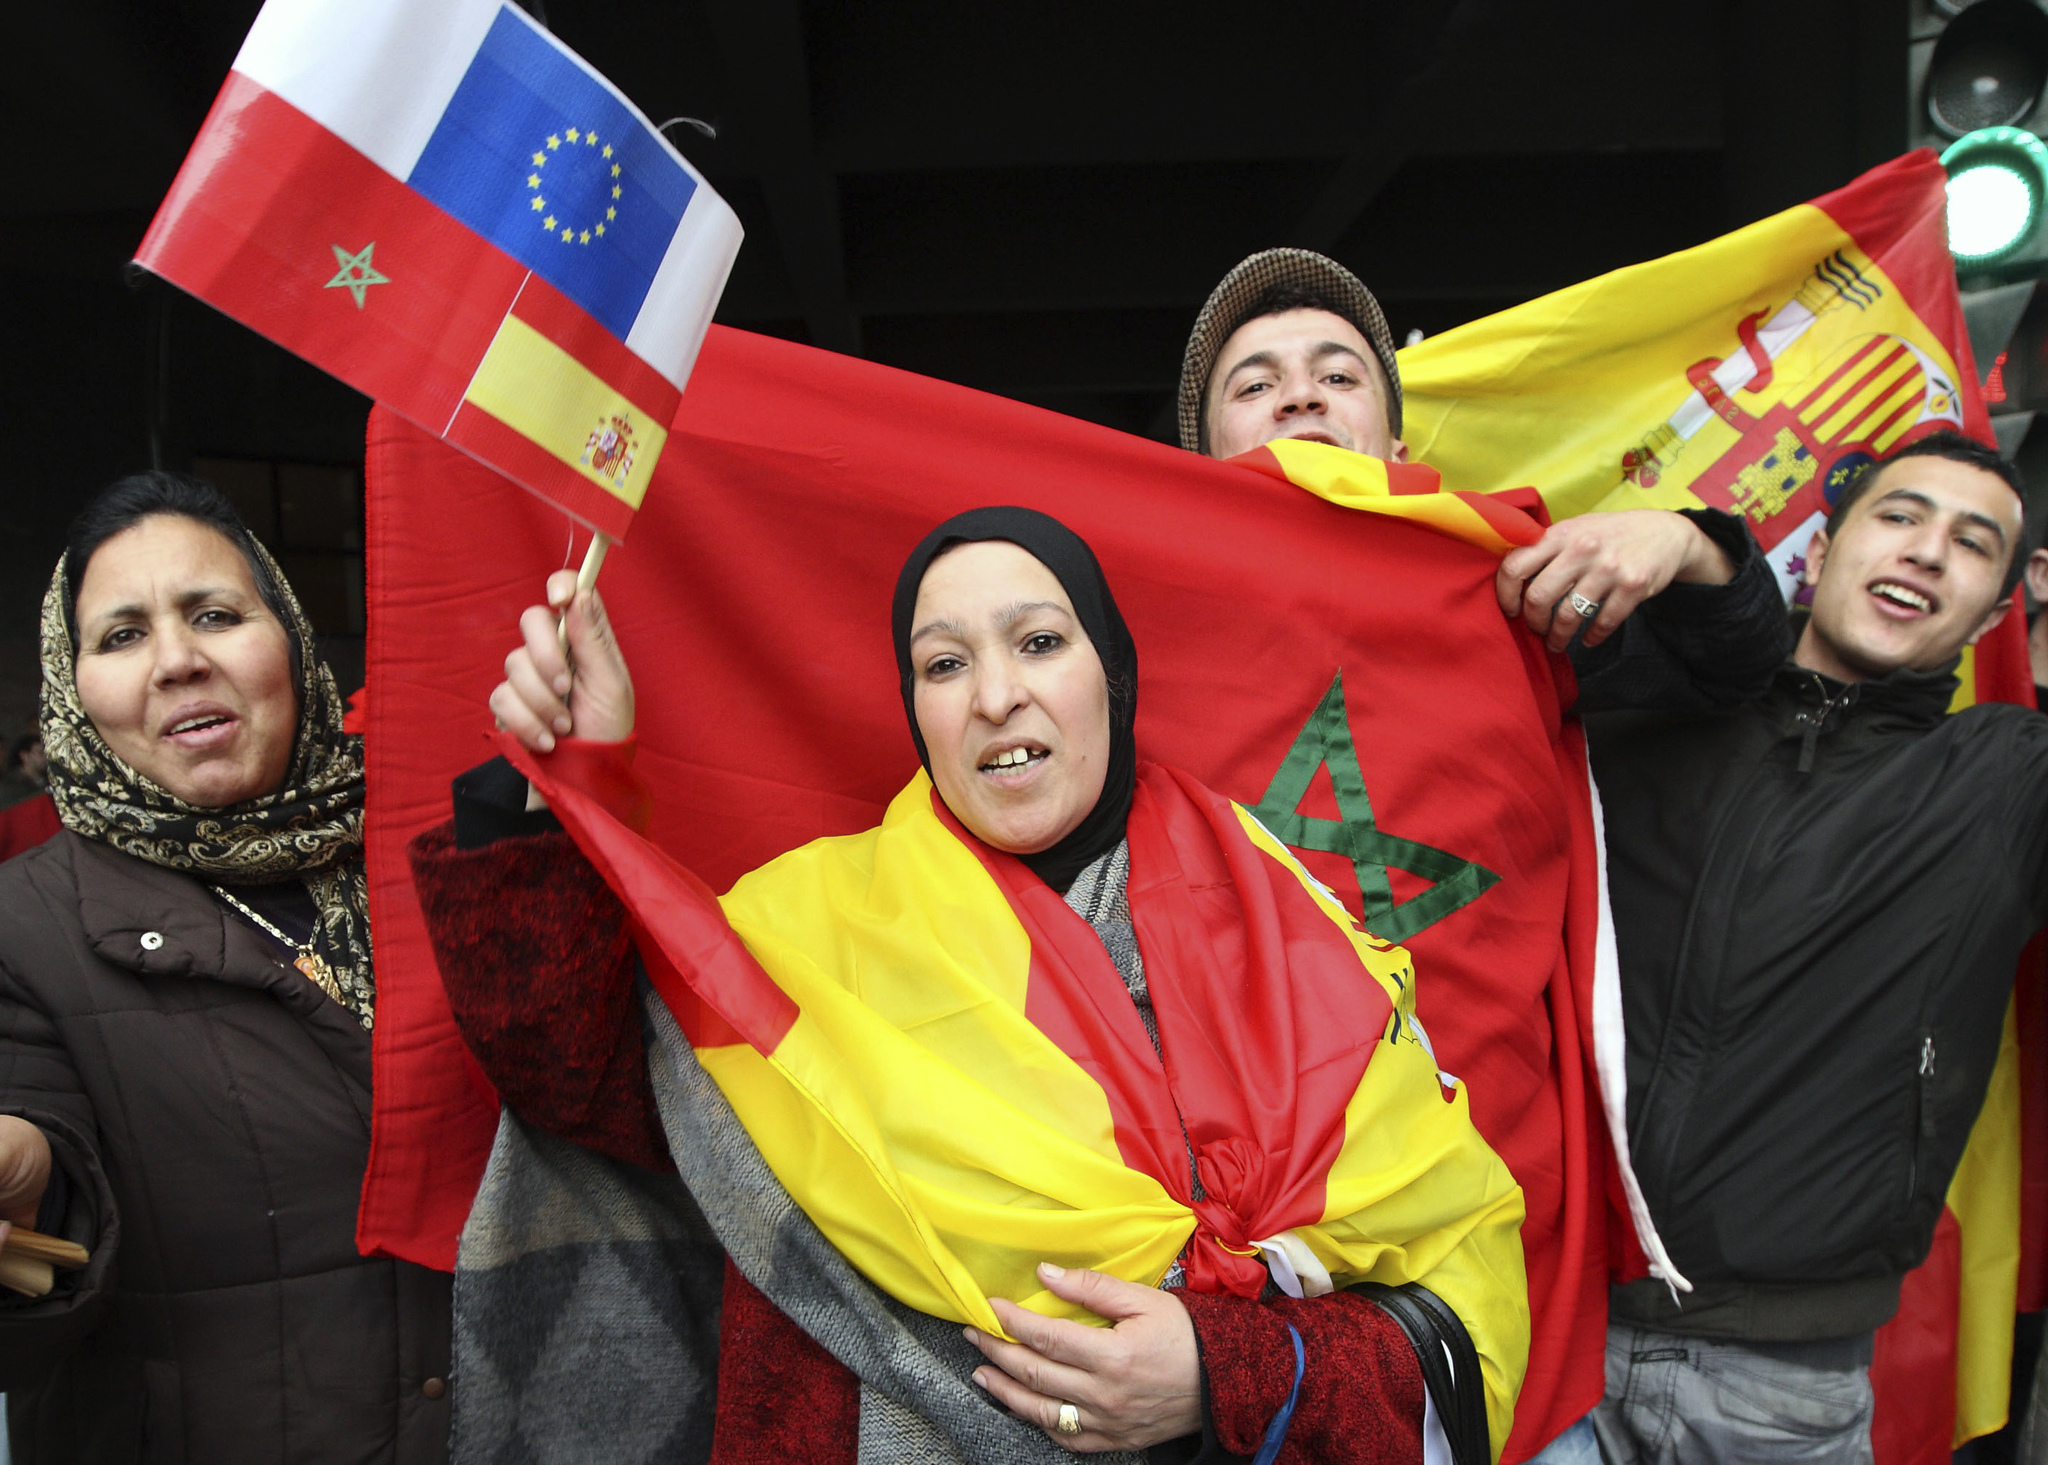 Marroques sostienen banderas de su pas y de Espaa.